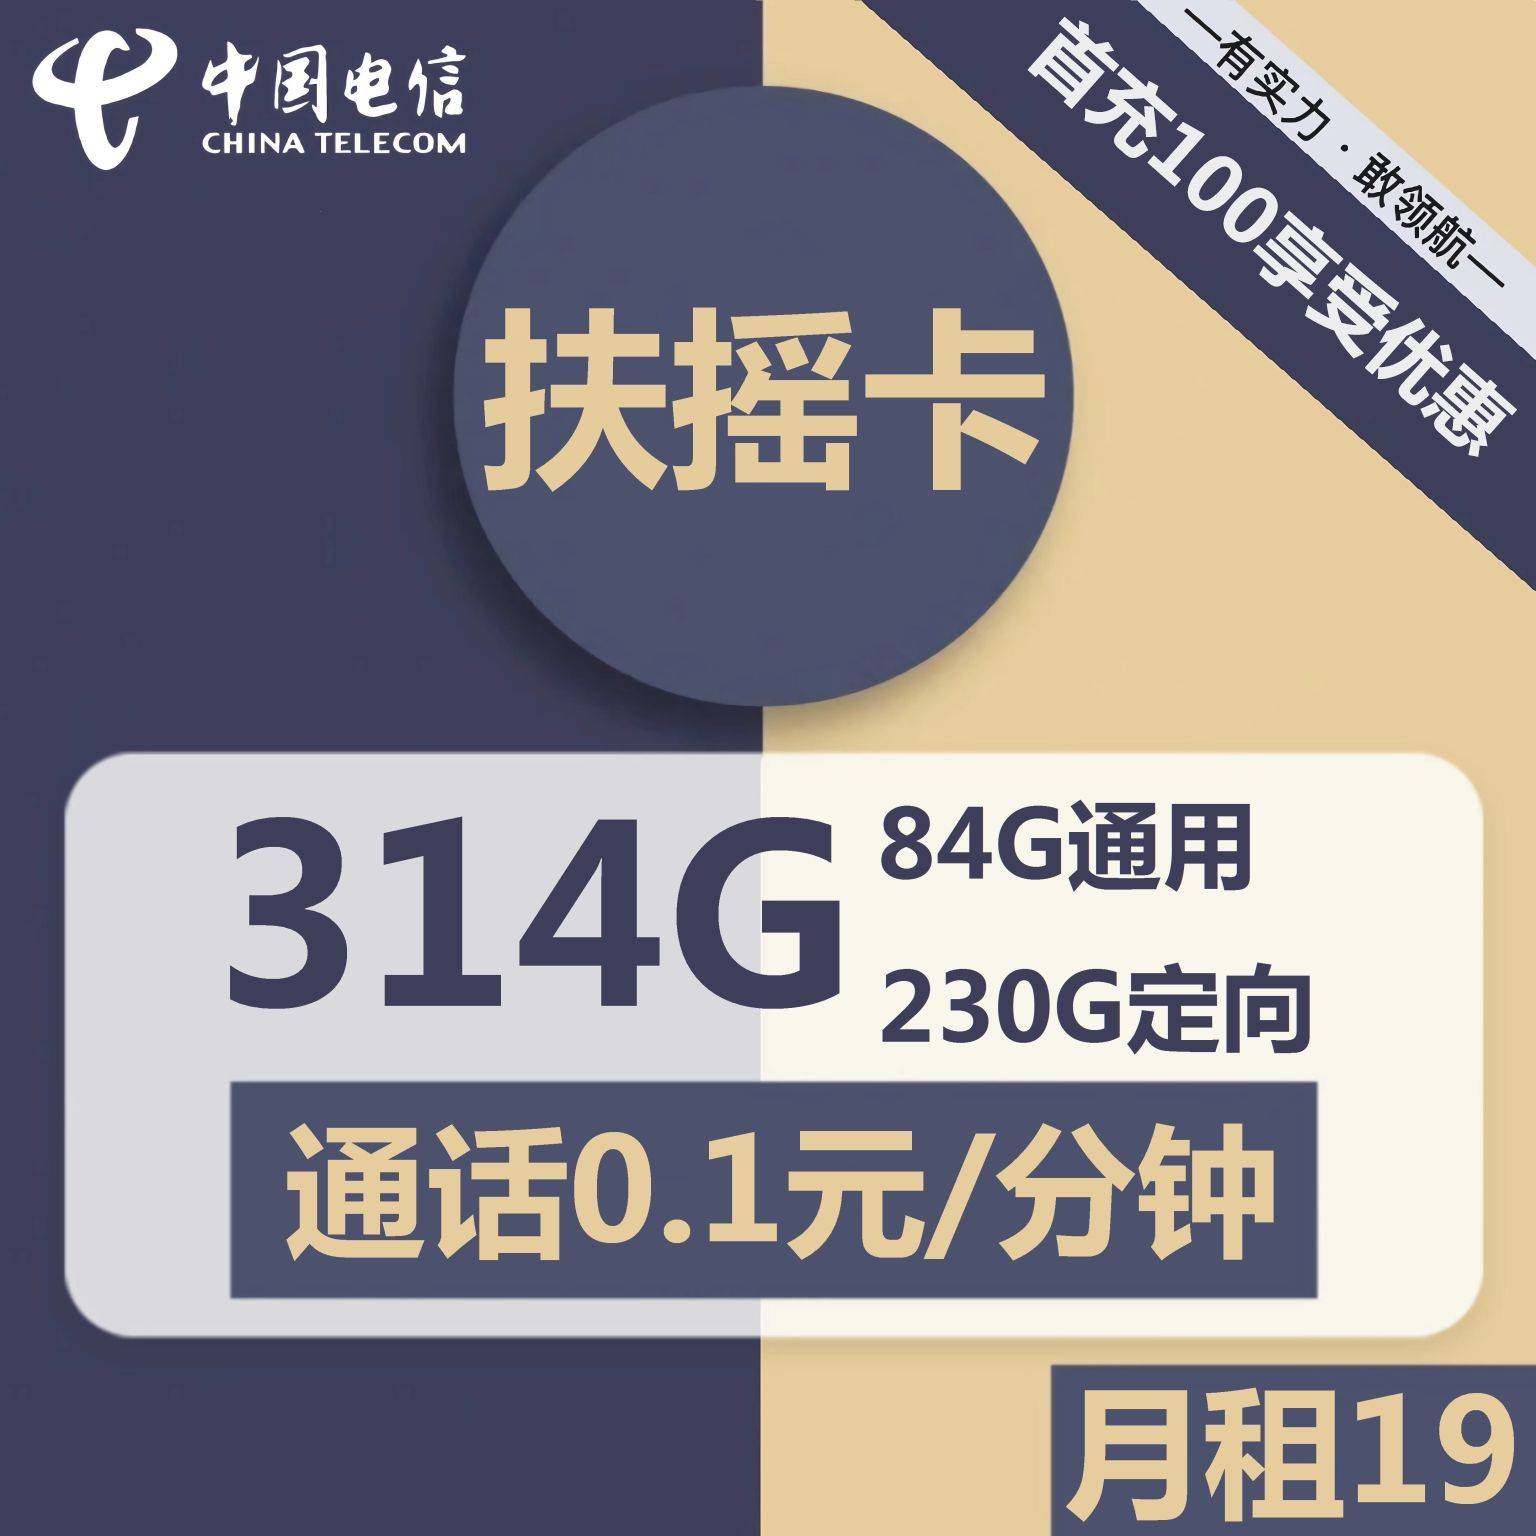 广东电信扶摇卡19元包84G通用+230G定向+通话0.1元/分钟